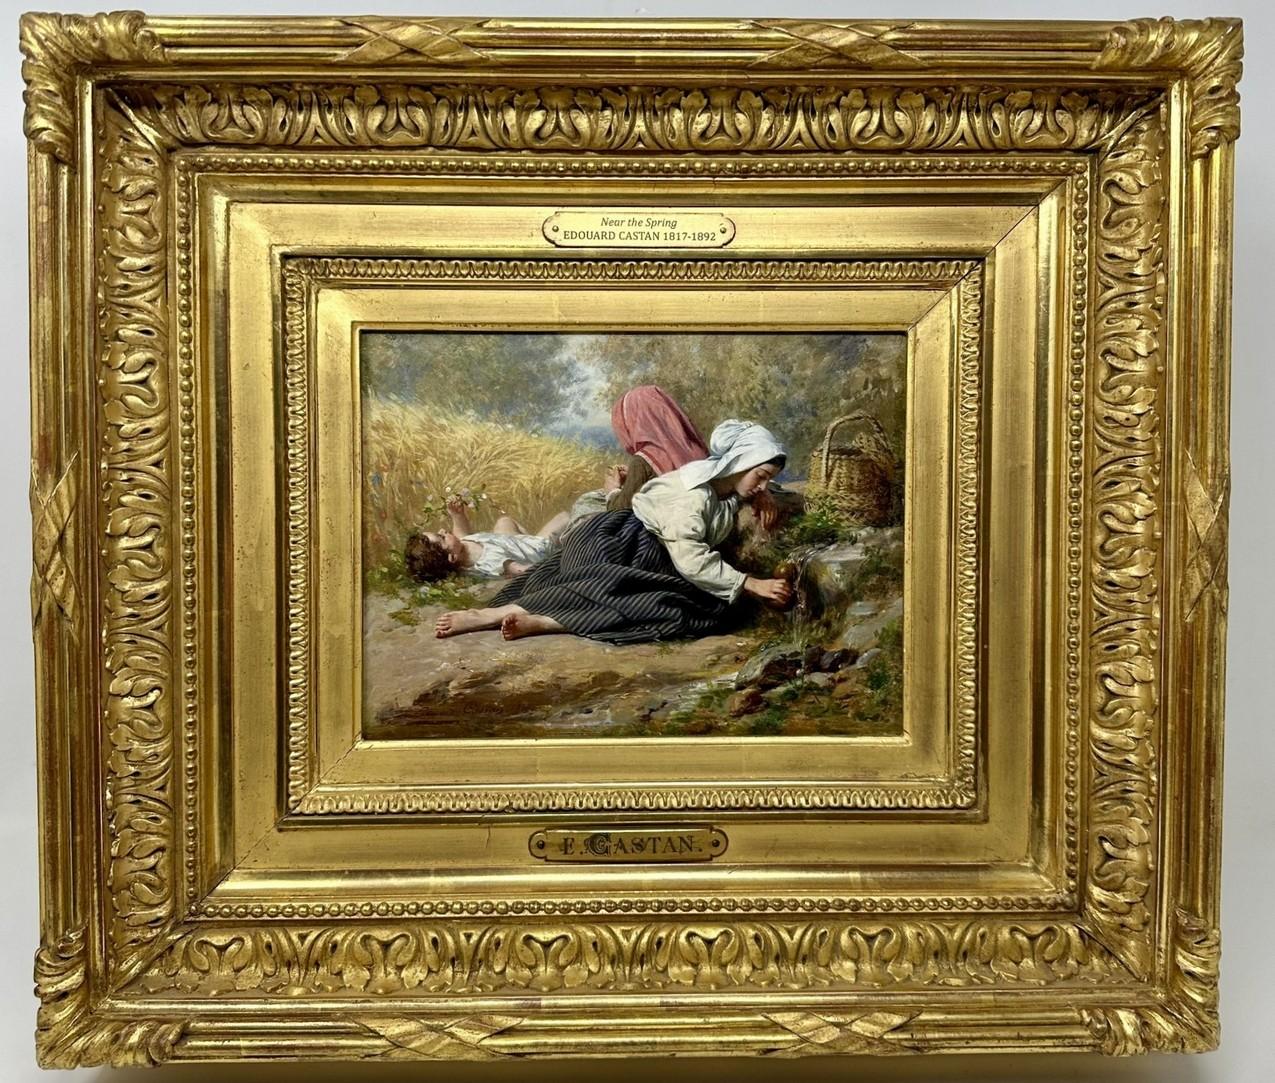 Un exemple de qualité exceptionnelle d'une peinture à l'huile encadrée sur panneau d'Artistics, de taille compacte et de qualité muséale. Complet avec son cadre en bois doré d'origine, lourd et richement doré. 

Dernier quart du XIXe siècle. 

Deux